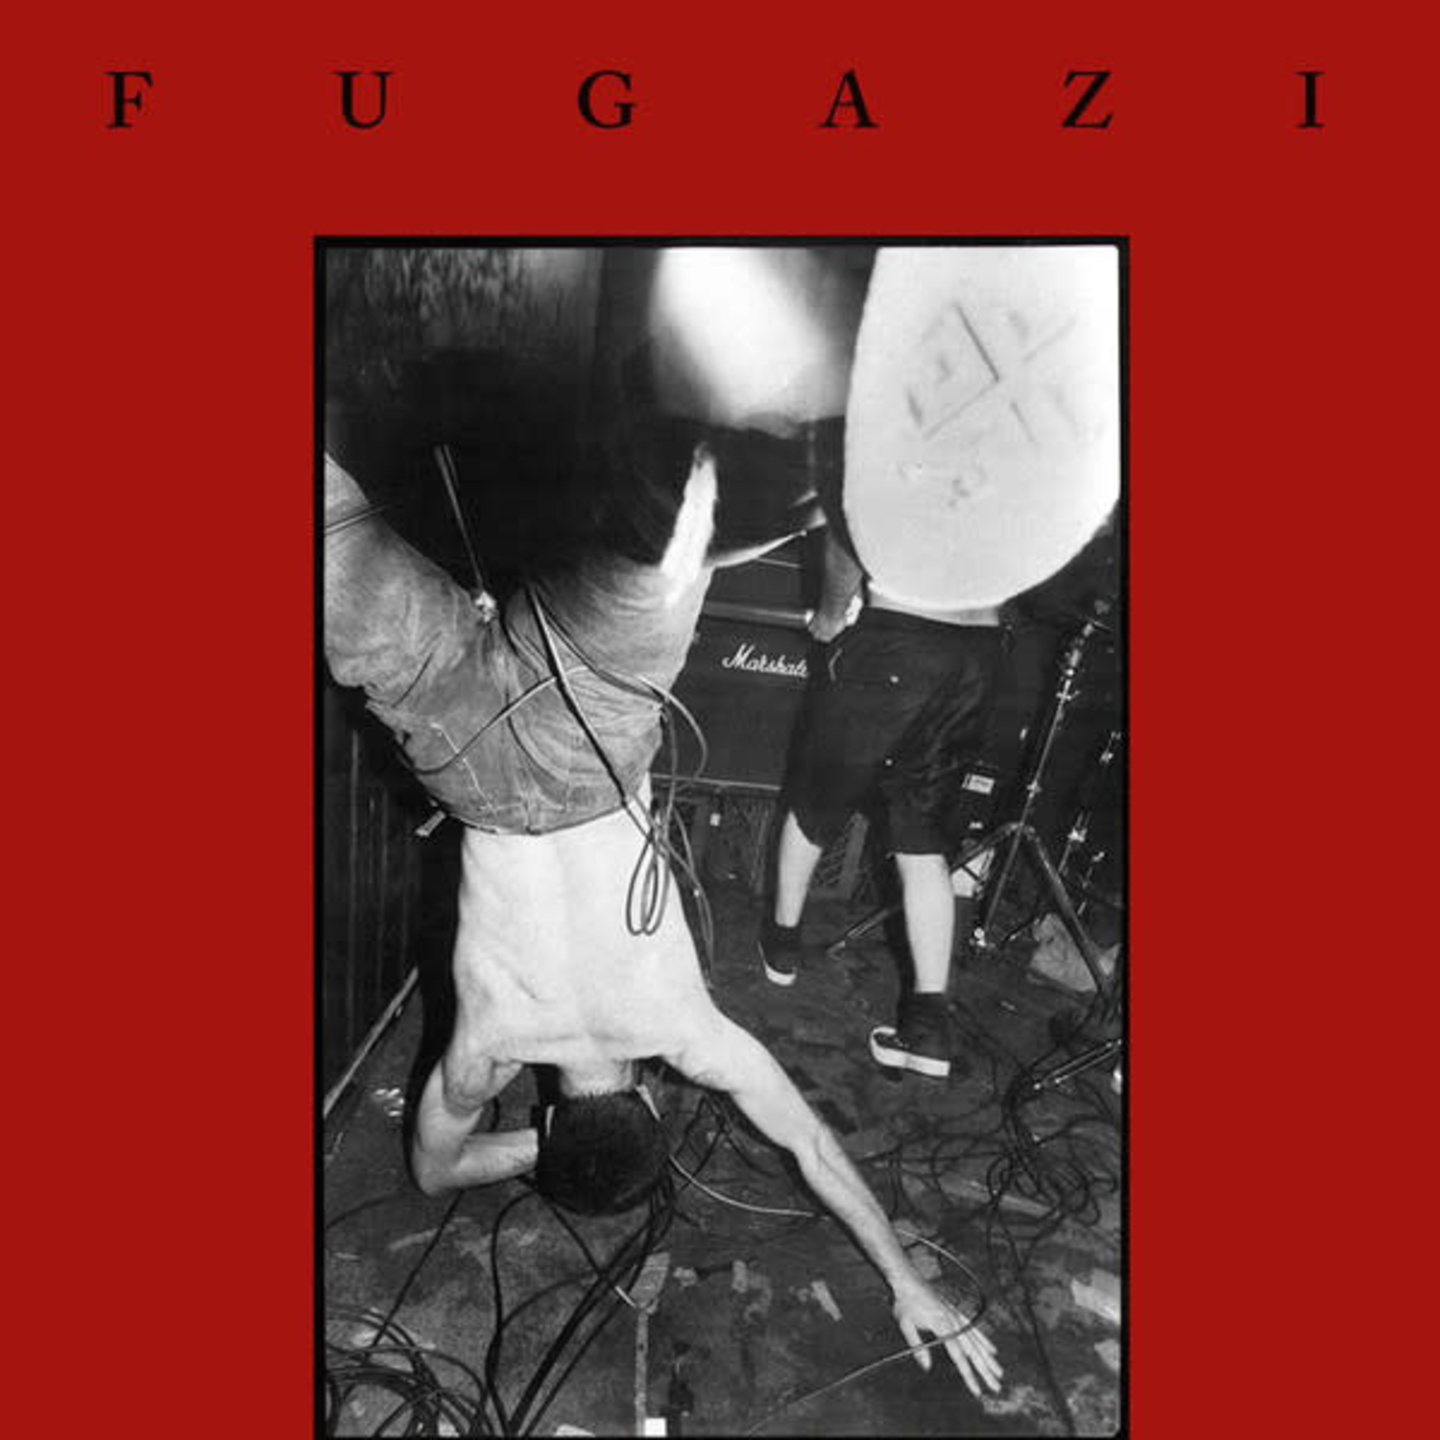 FUGAZI - Fugazi 12